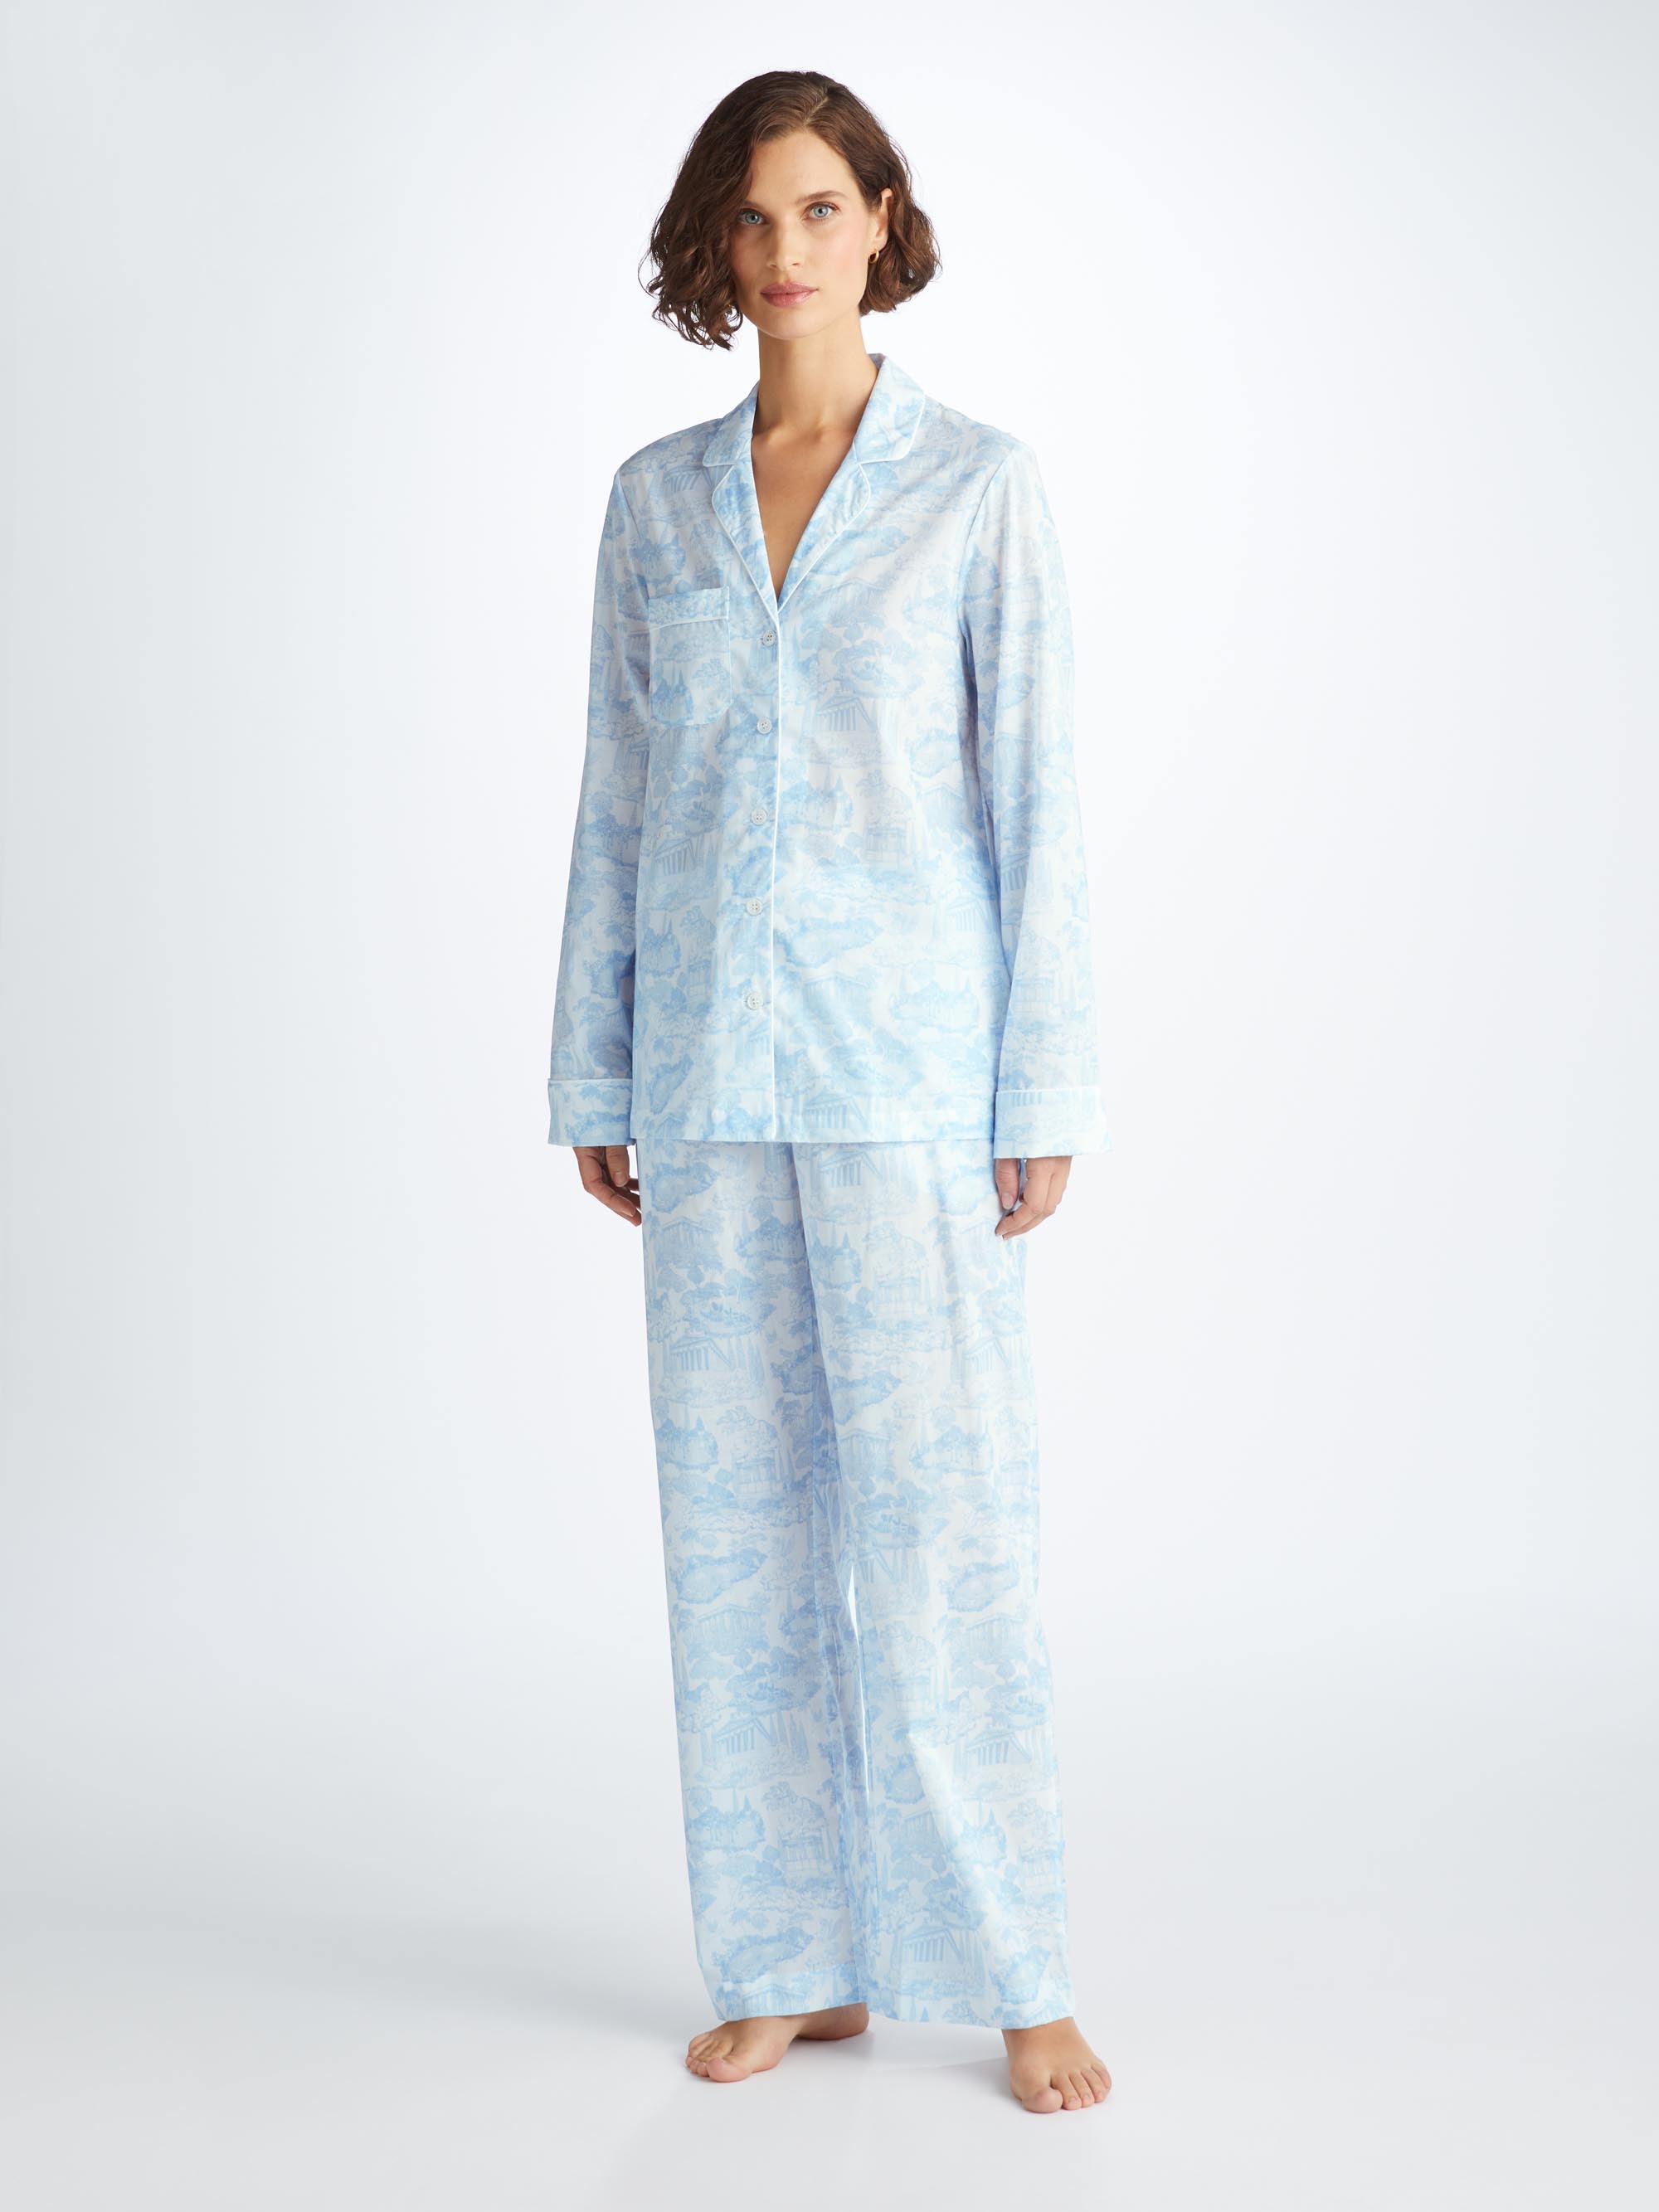 Shop Derek Rose Women's Pyjamas Ledbury 77 Cotton Batiste White